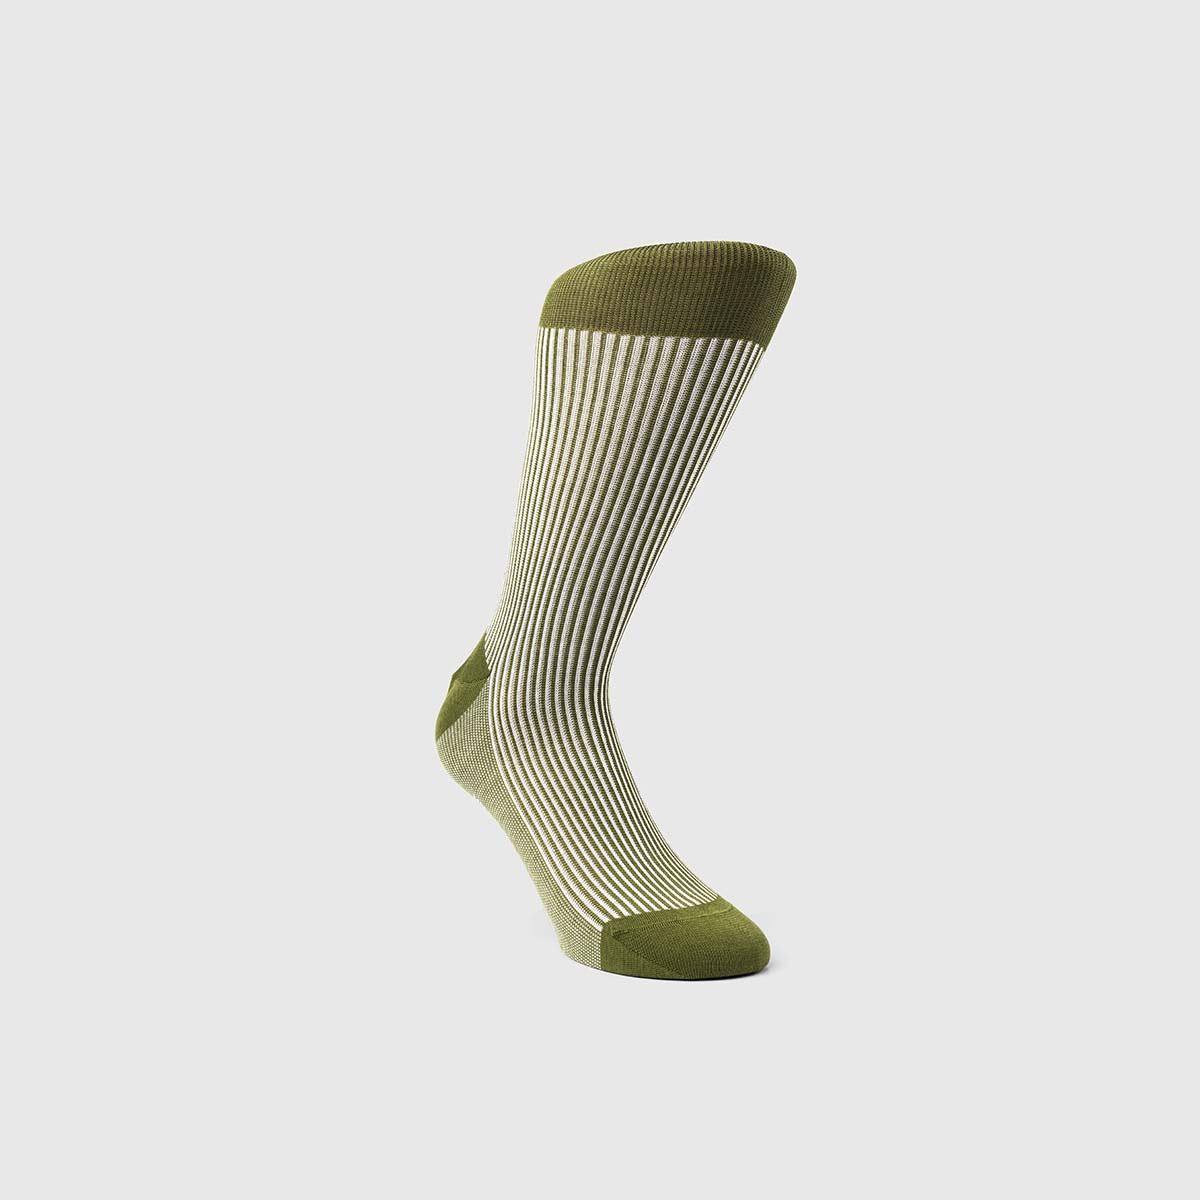 Bresciani 1970 Cotton Socks in Green & White – M